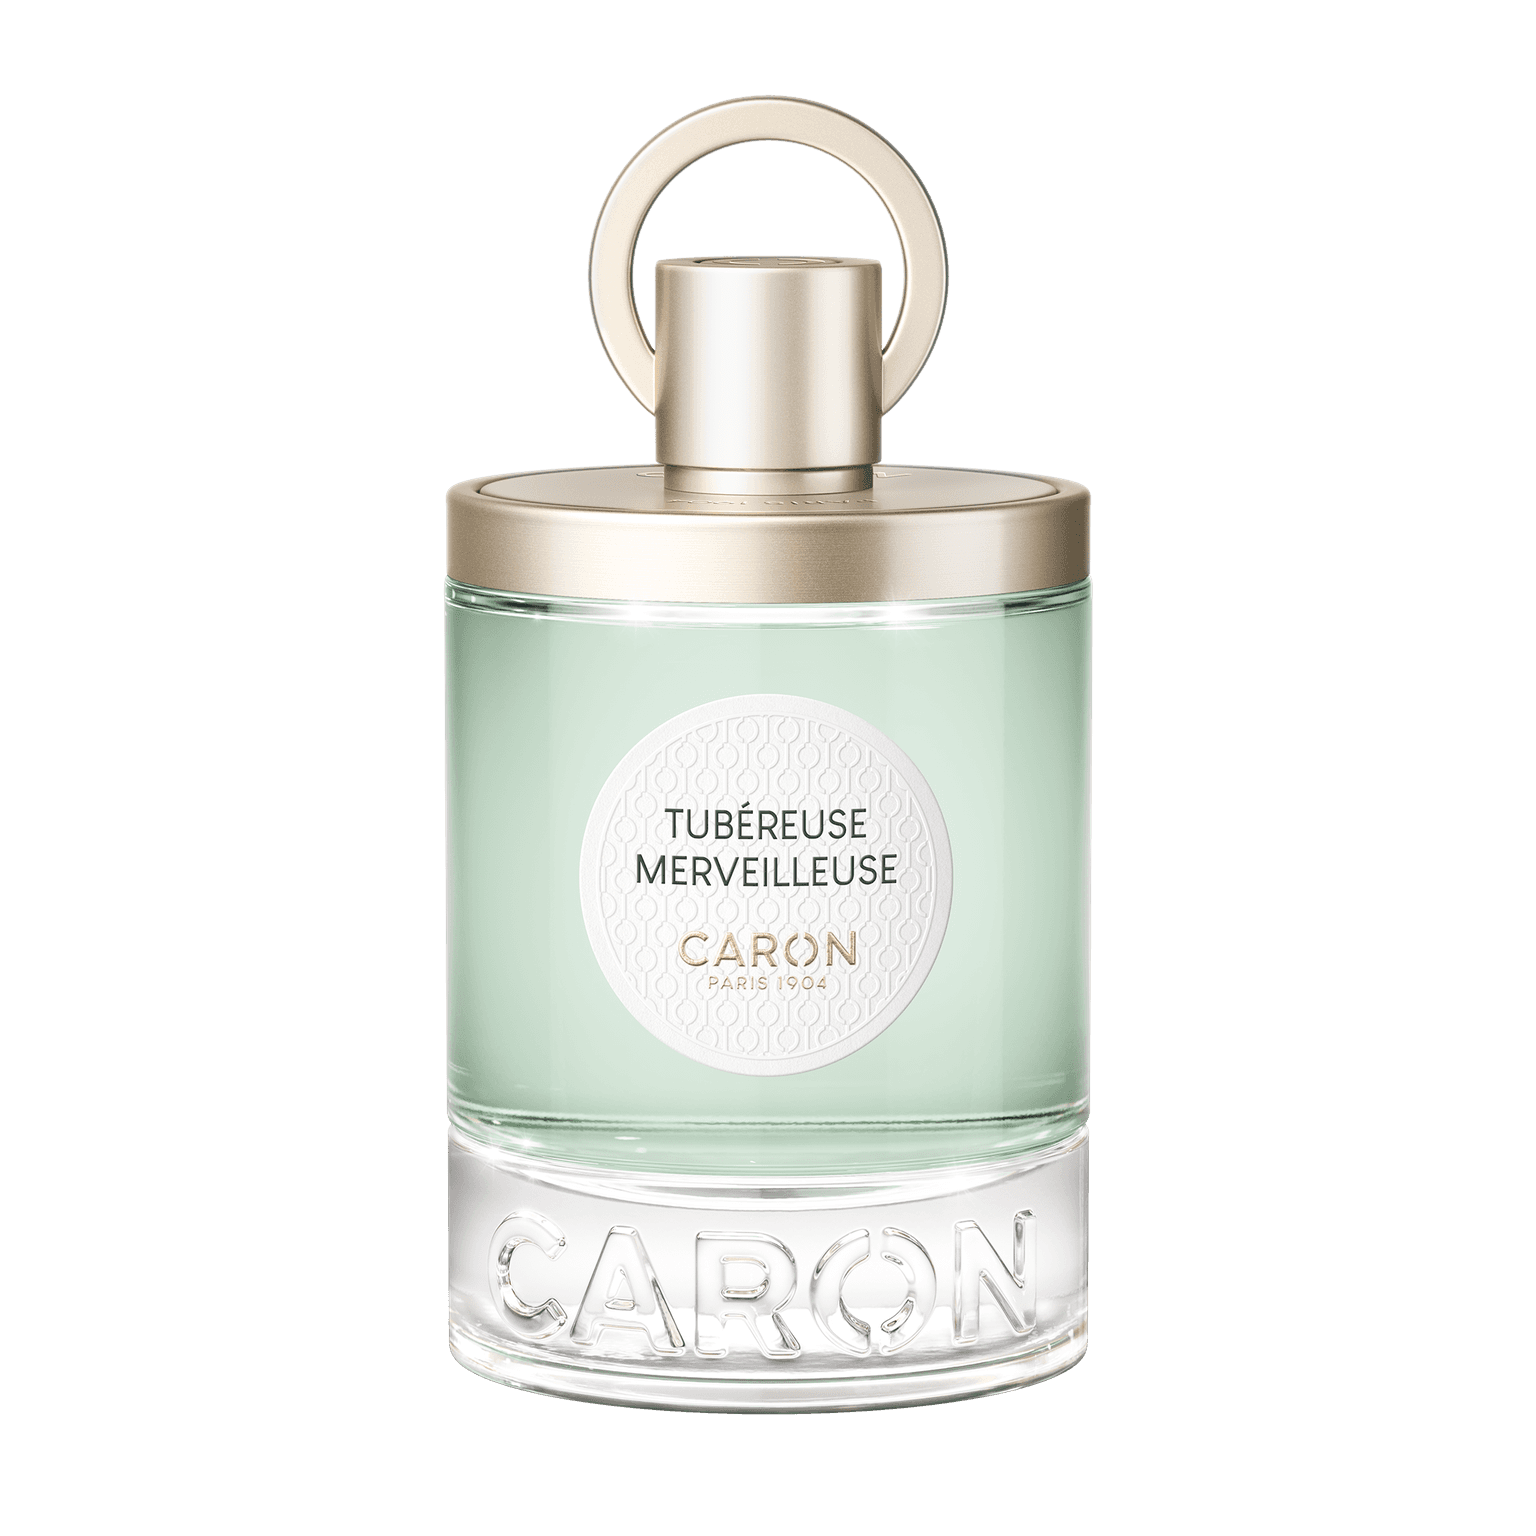 Caron Tubereuse Merveilleuse 100ml | Perfume Lounge.